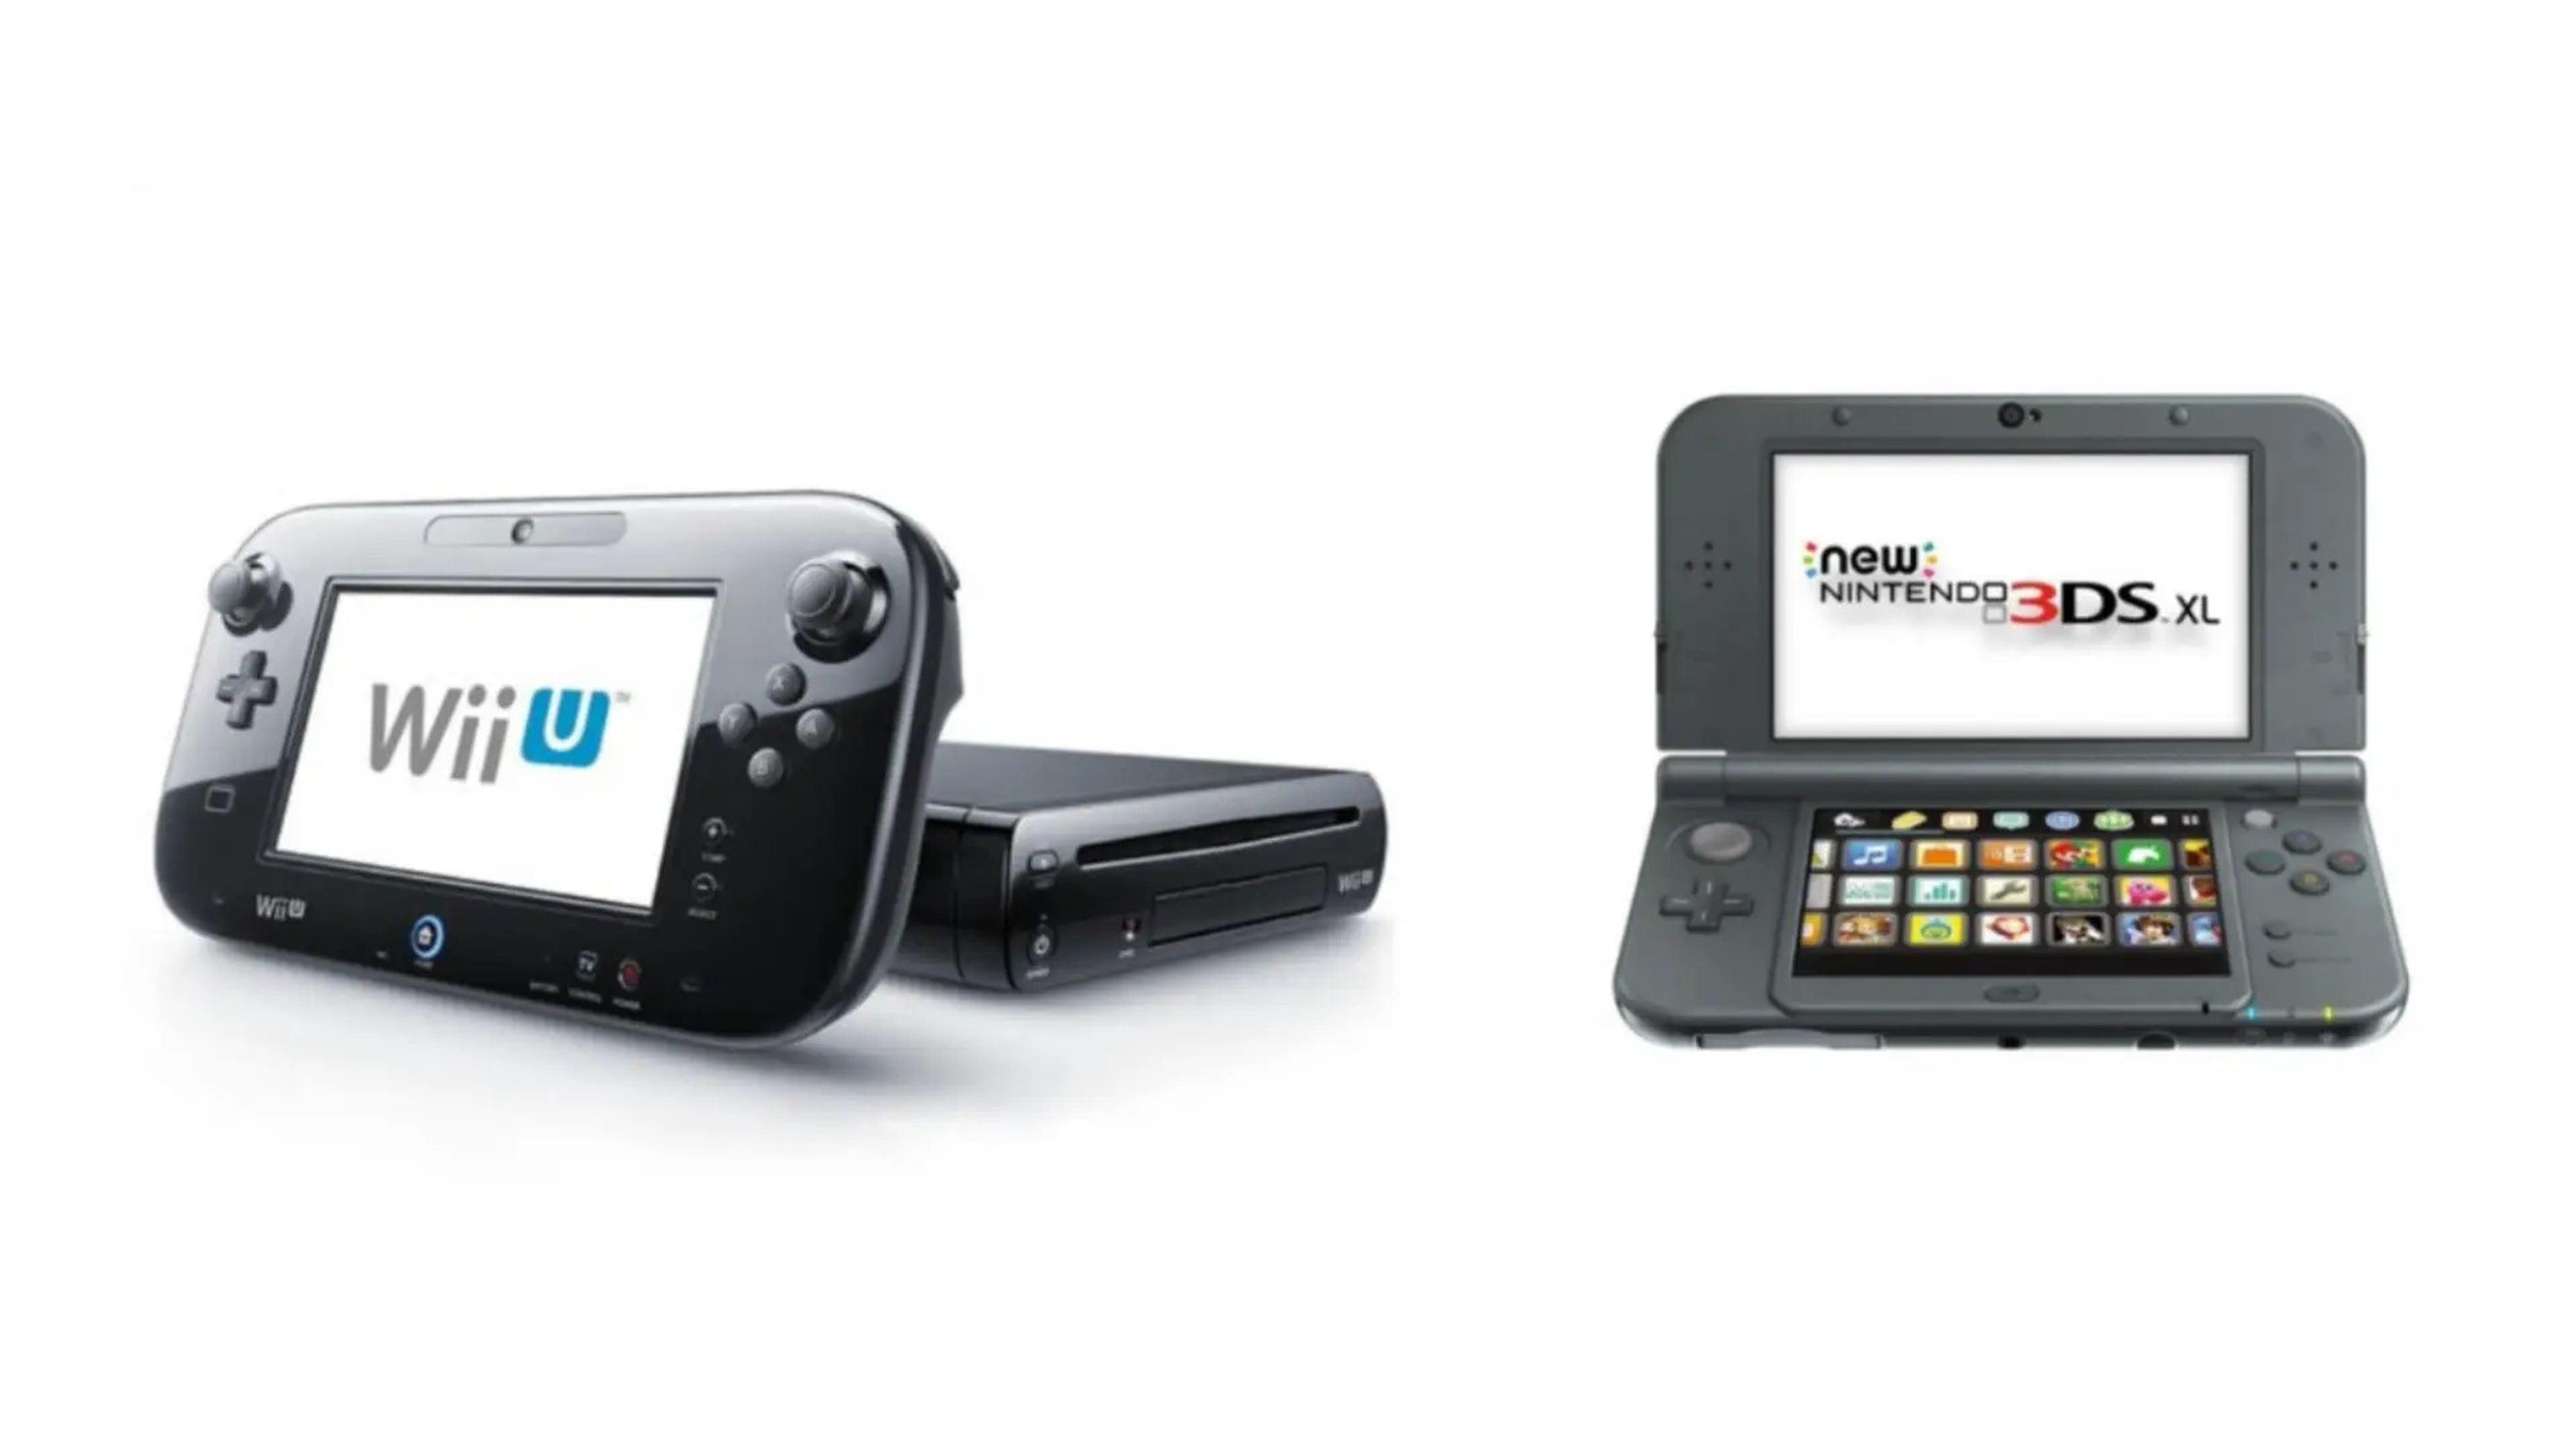 Nintendo 3DS y Wii U